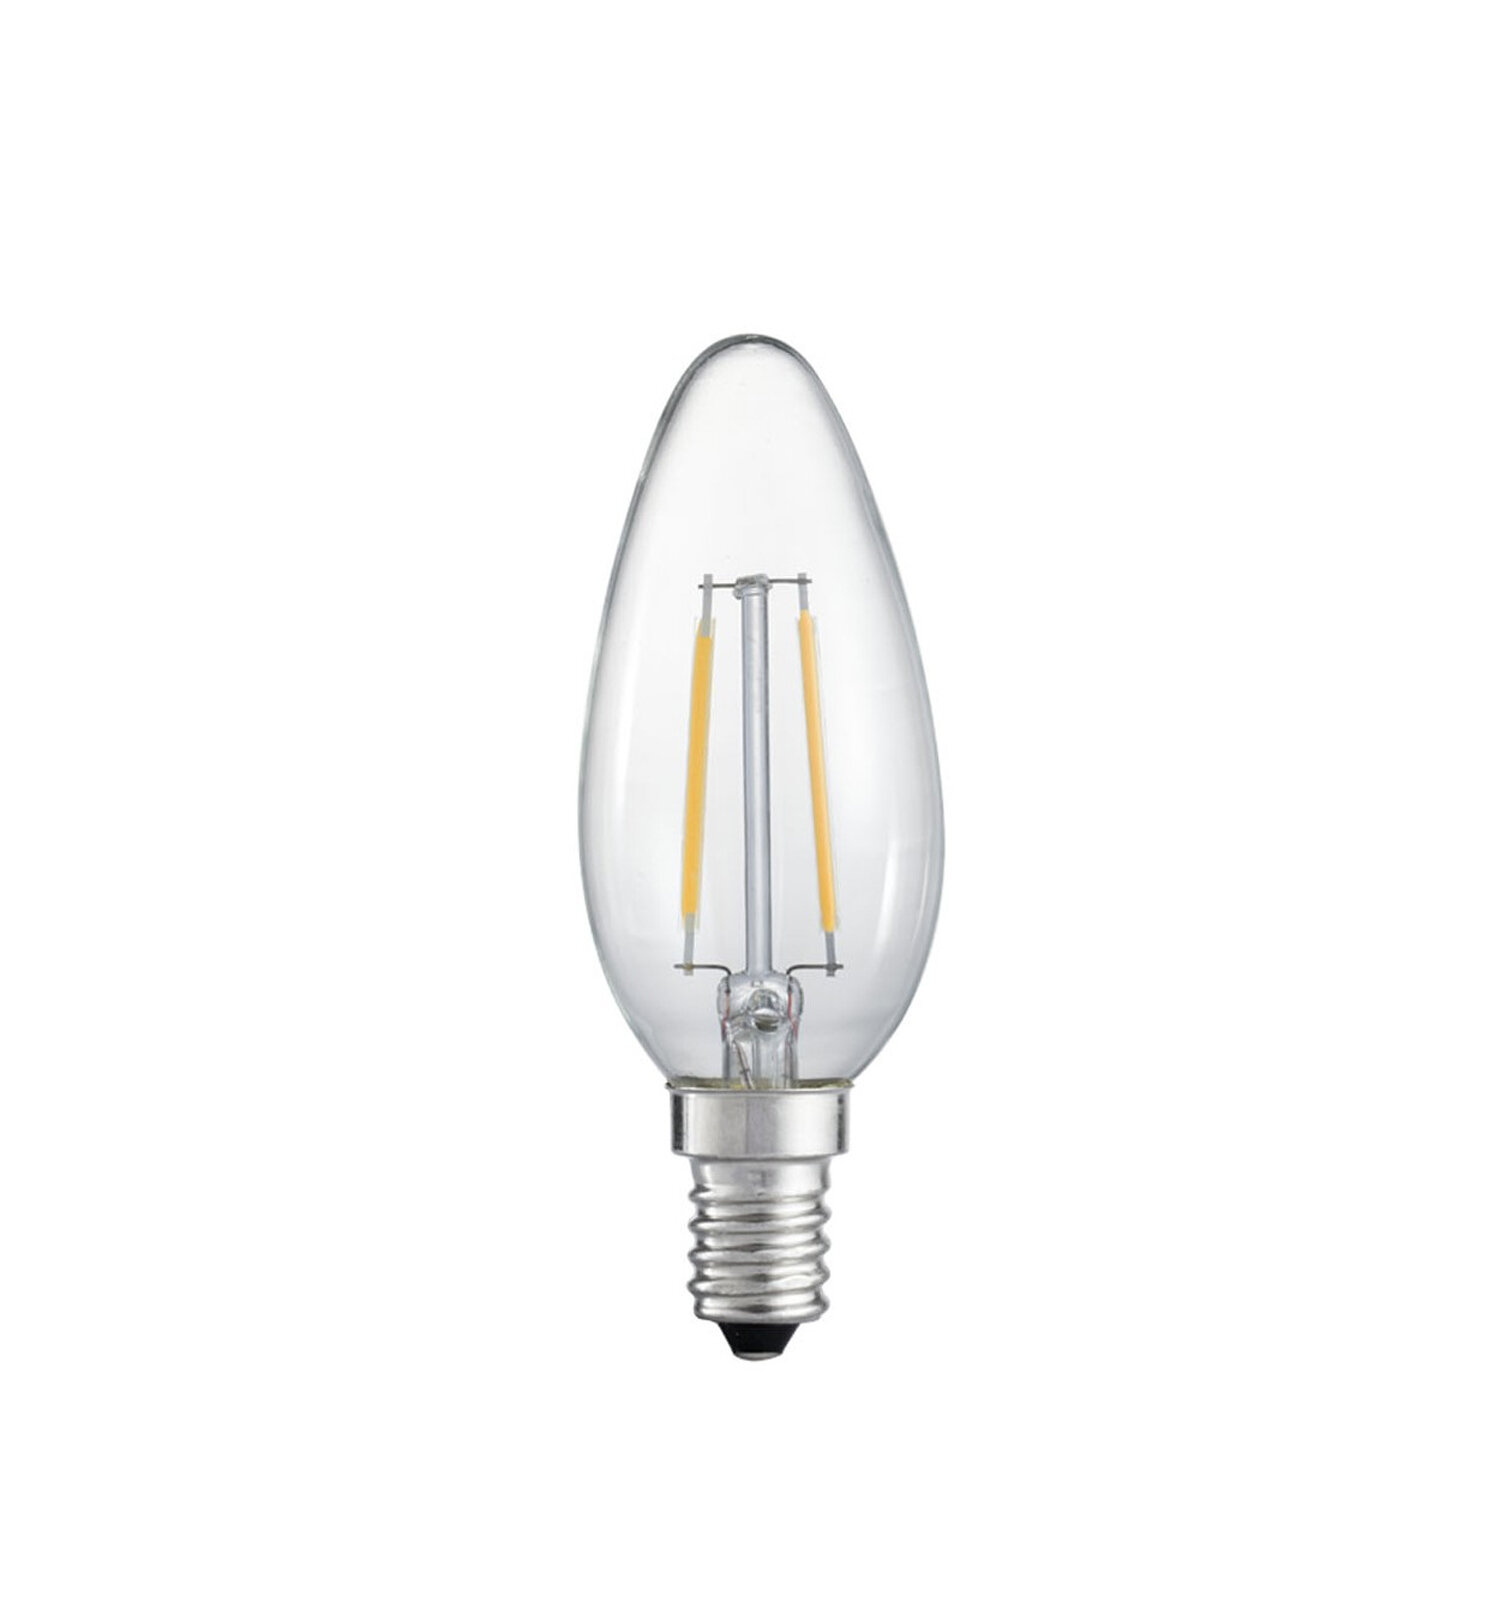 diep jacht Barmhartig emark 2Watt, C35 Dimmable LED Candle Light Bulb & Reviews | Wayfair